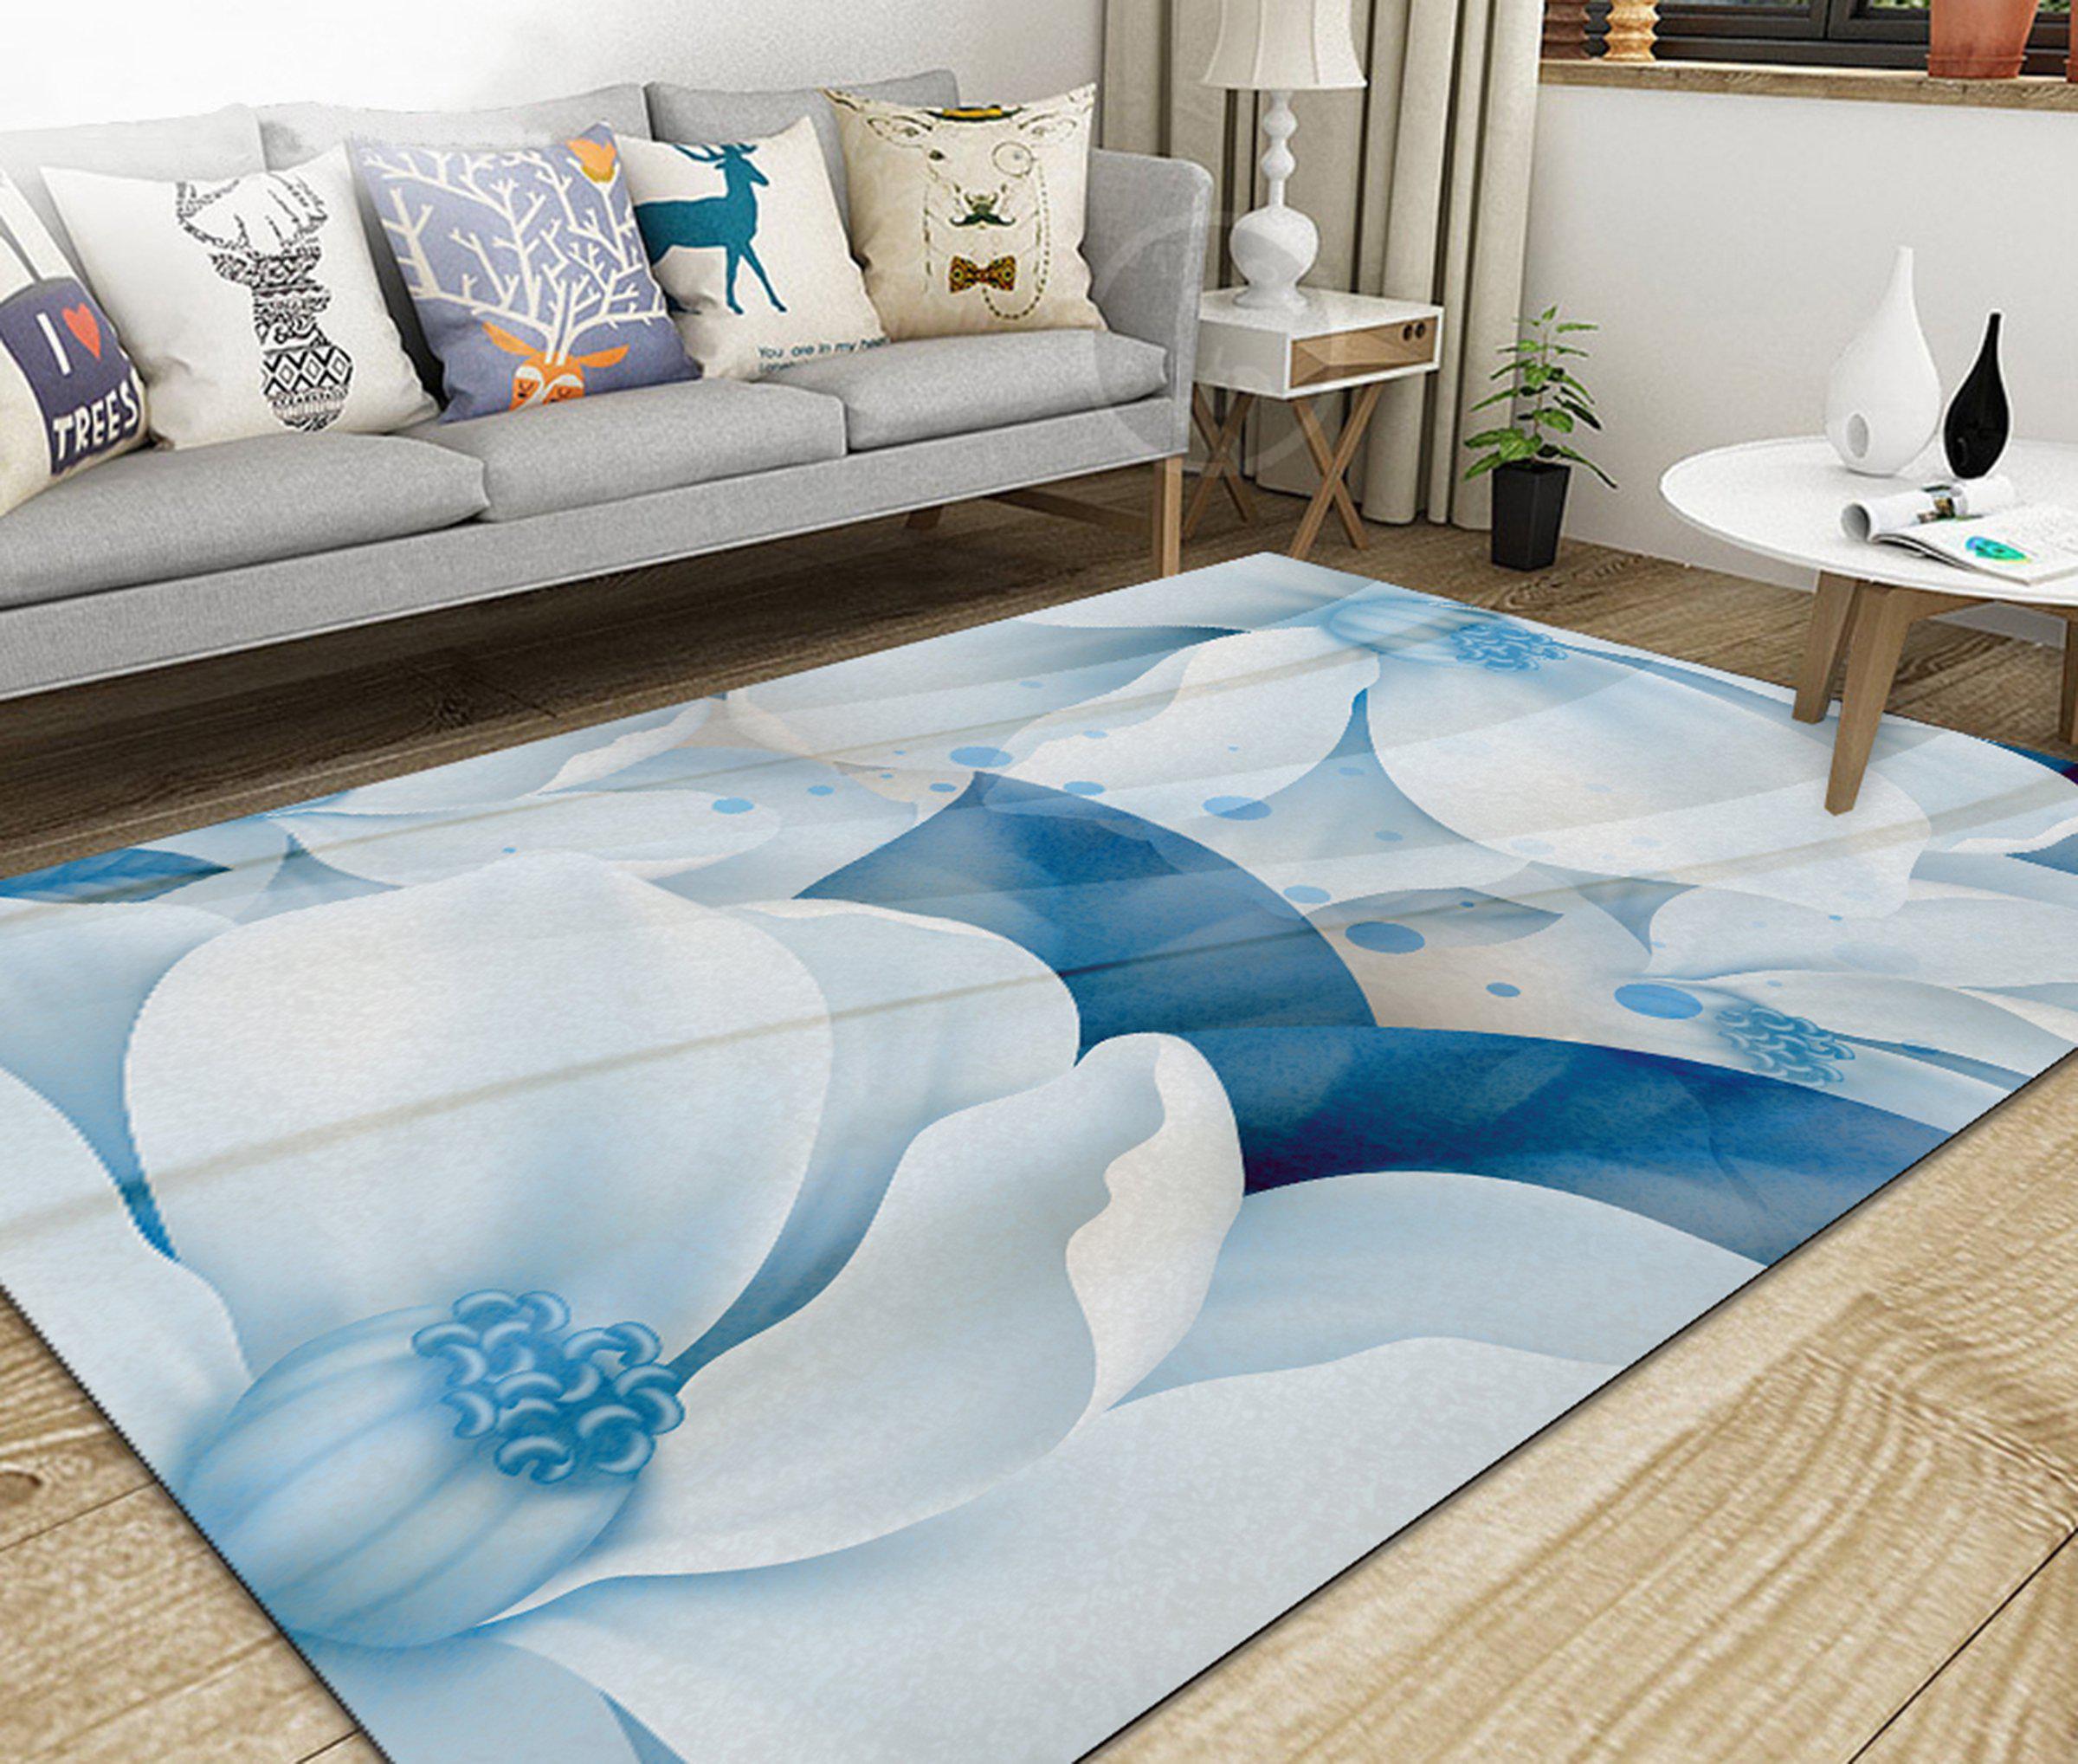 3D Home Carpet White Flower WG425 Non Slip Rug Mat, 60cmx90cm (23.6"x35.4")